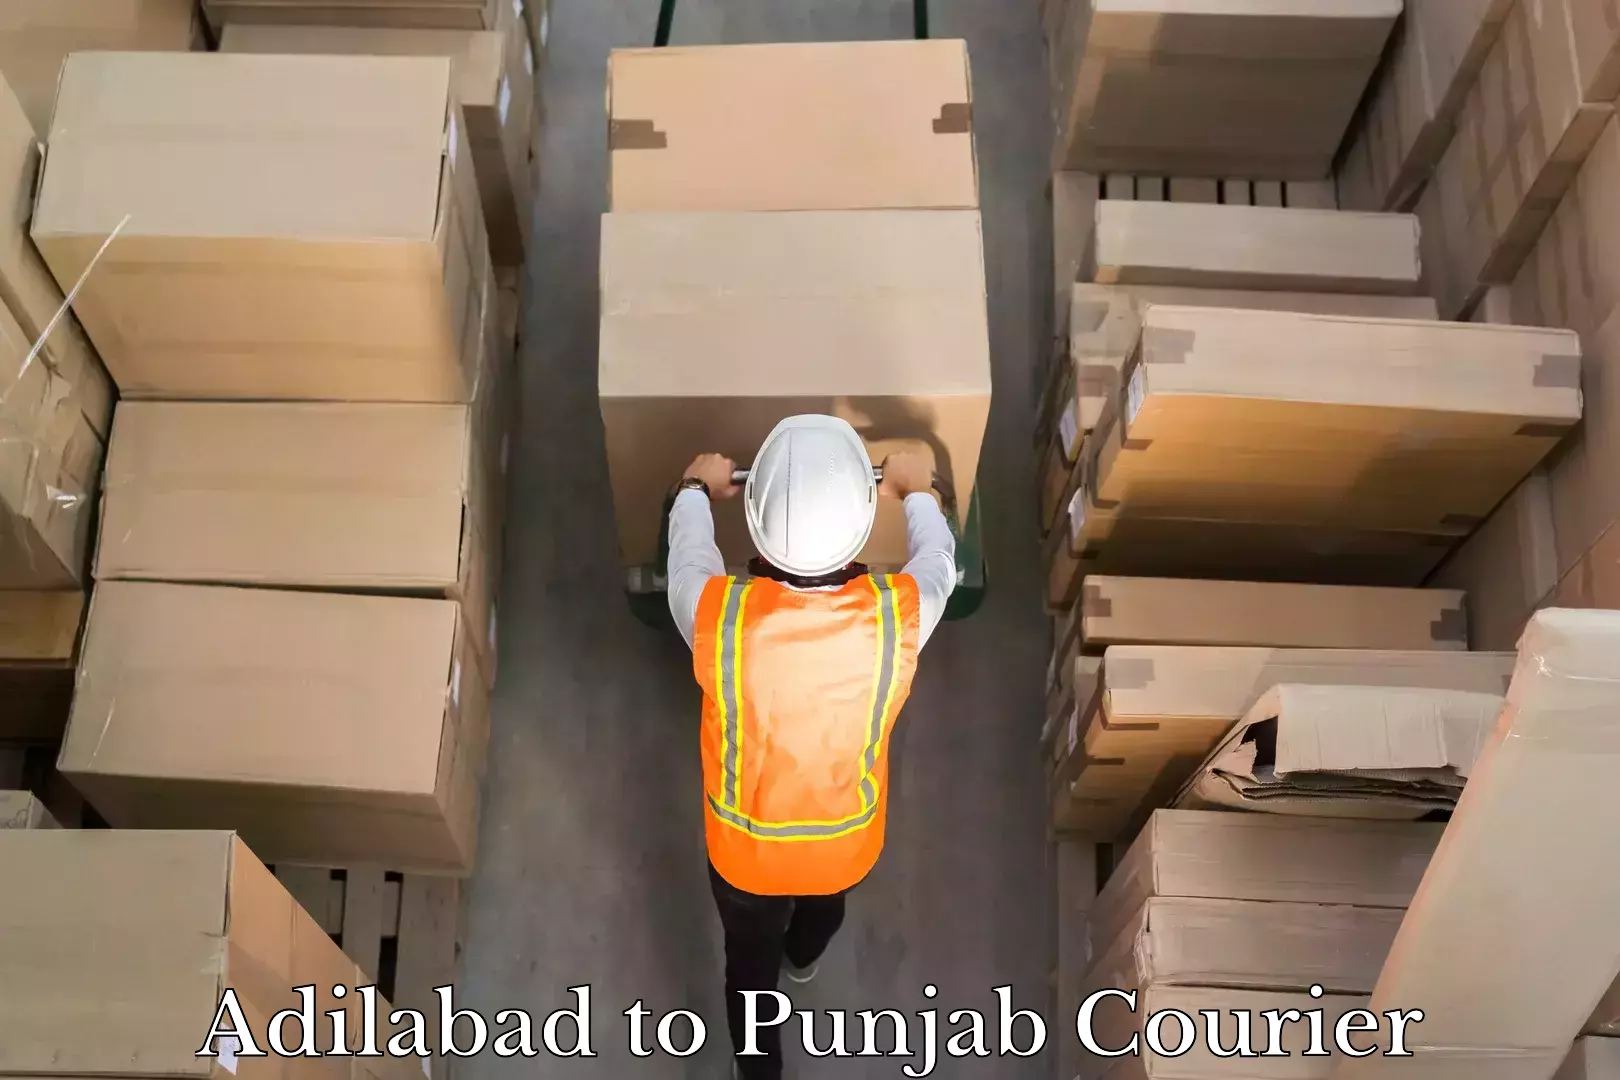 Affordable parcel service Adilabad to Punjab